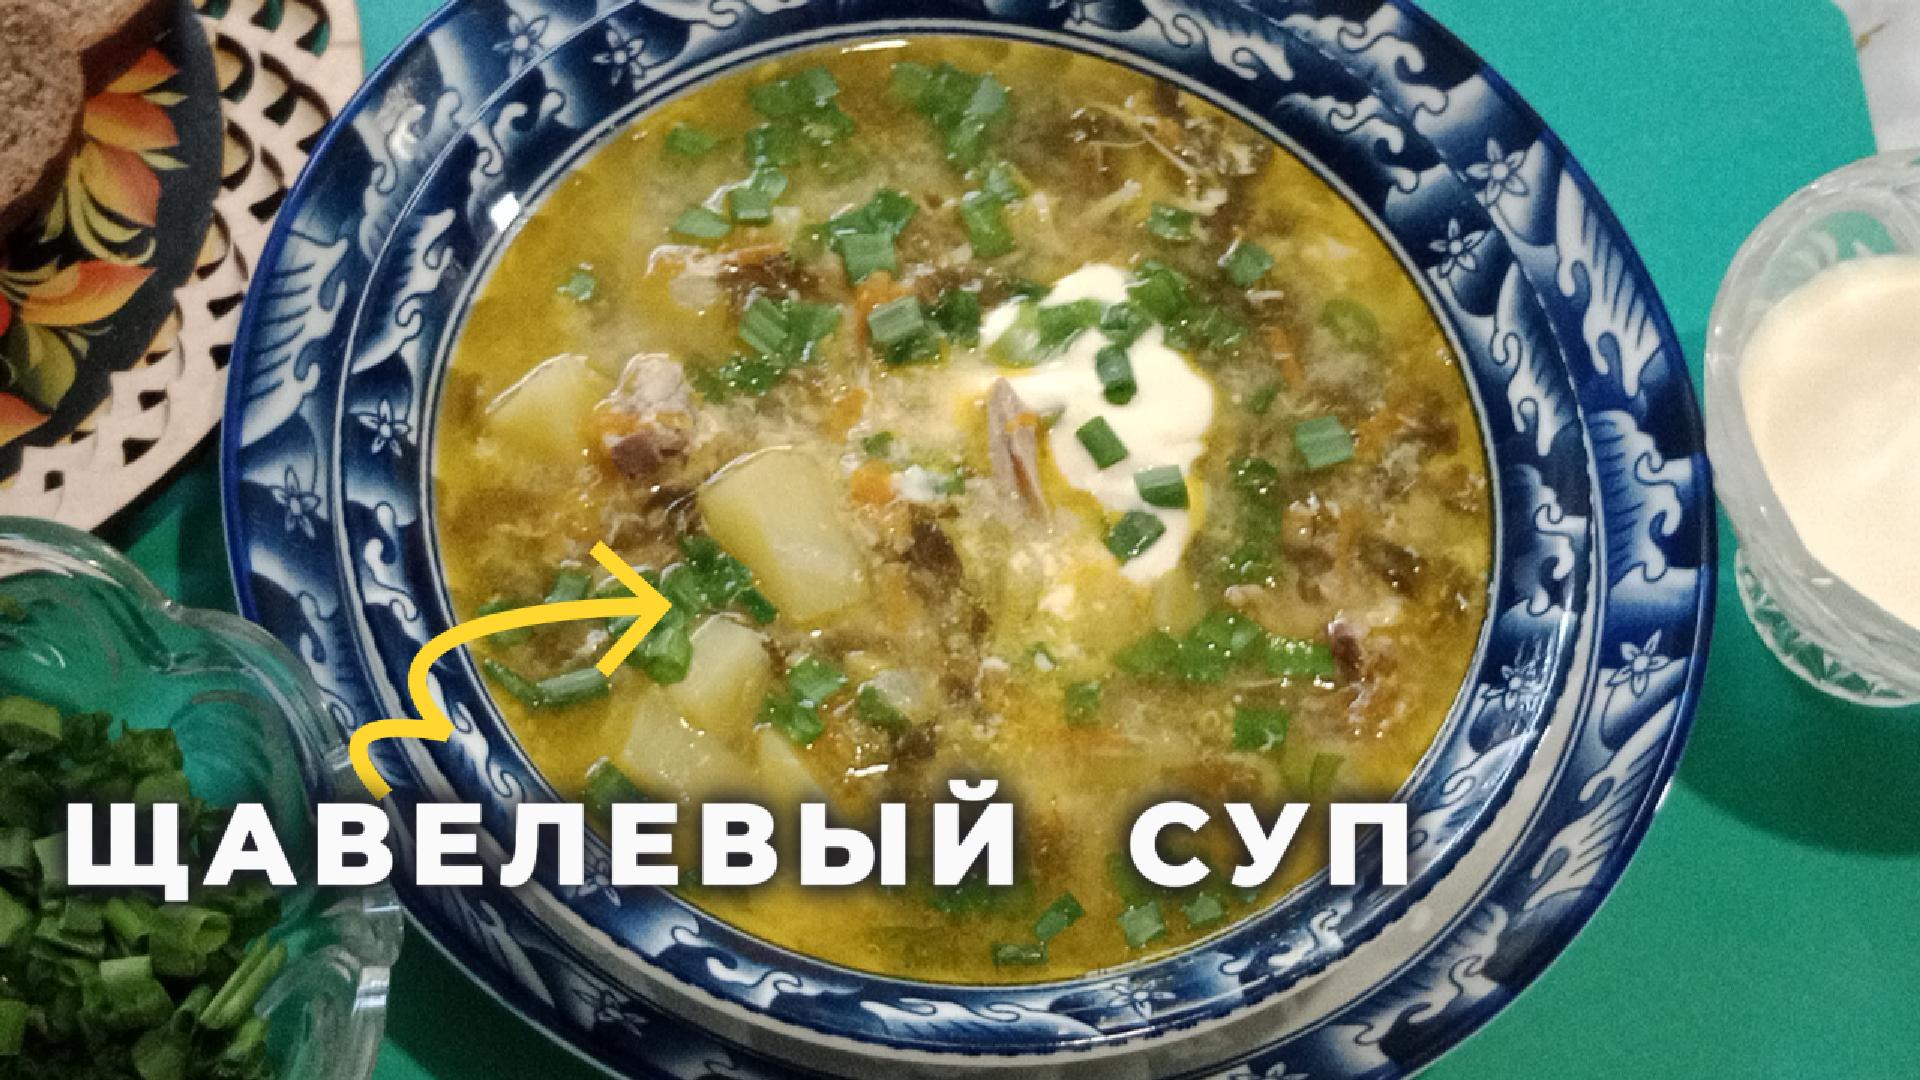 Щавелевый суп. Зеленый борщ со щавелем и яйцом.Простой и вкусный рецепт.